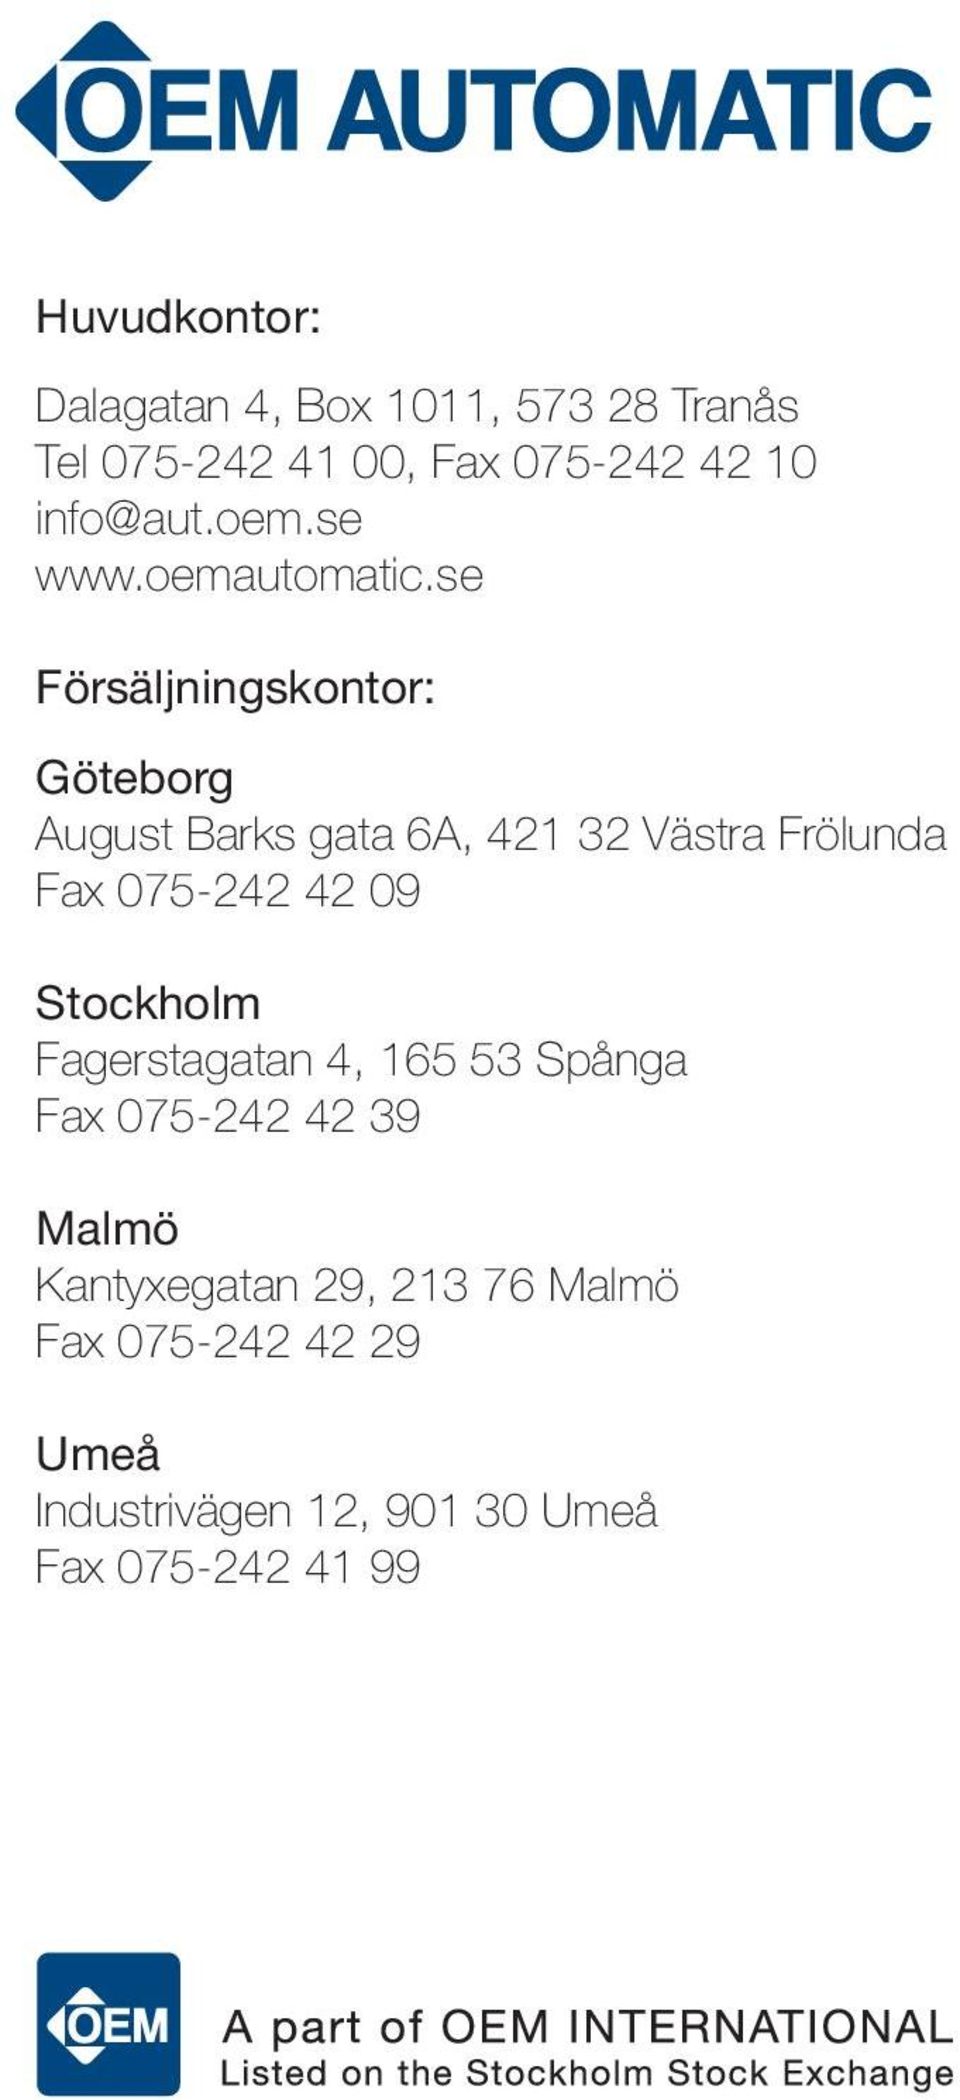 se Försäljningskontor: Göteborg August Barks gata 6A, 421 32 Västra Frölunda Fax 075-242 42 09